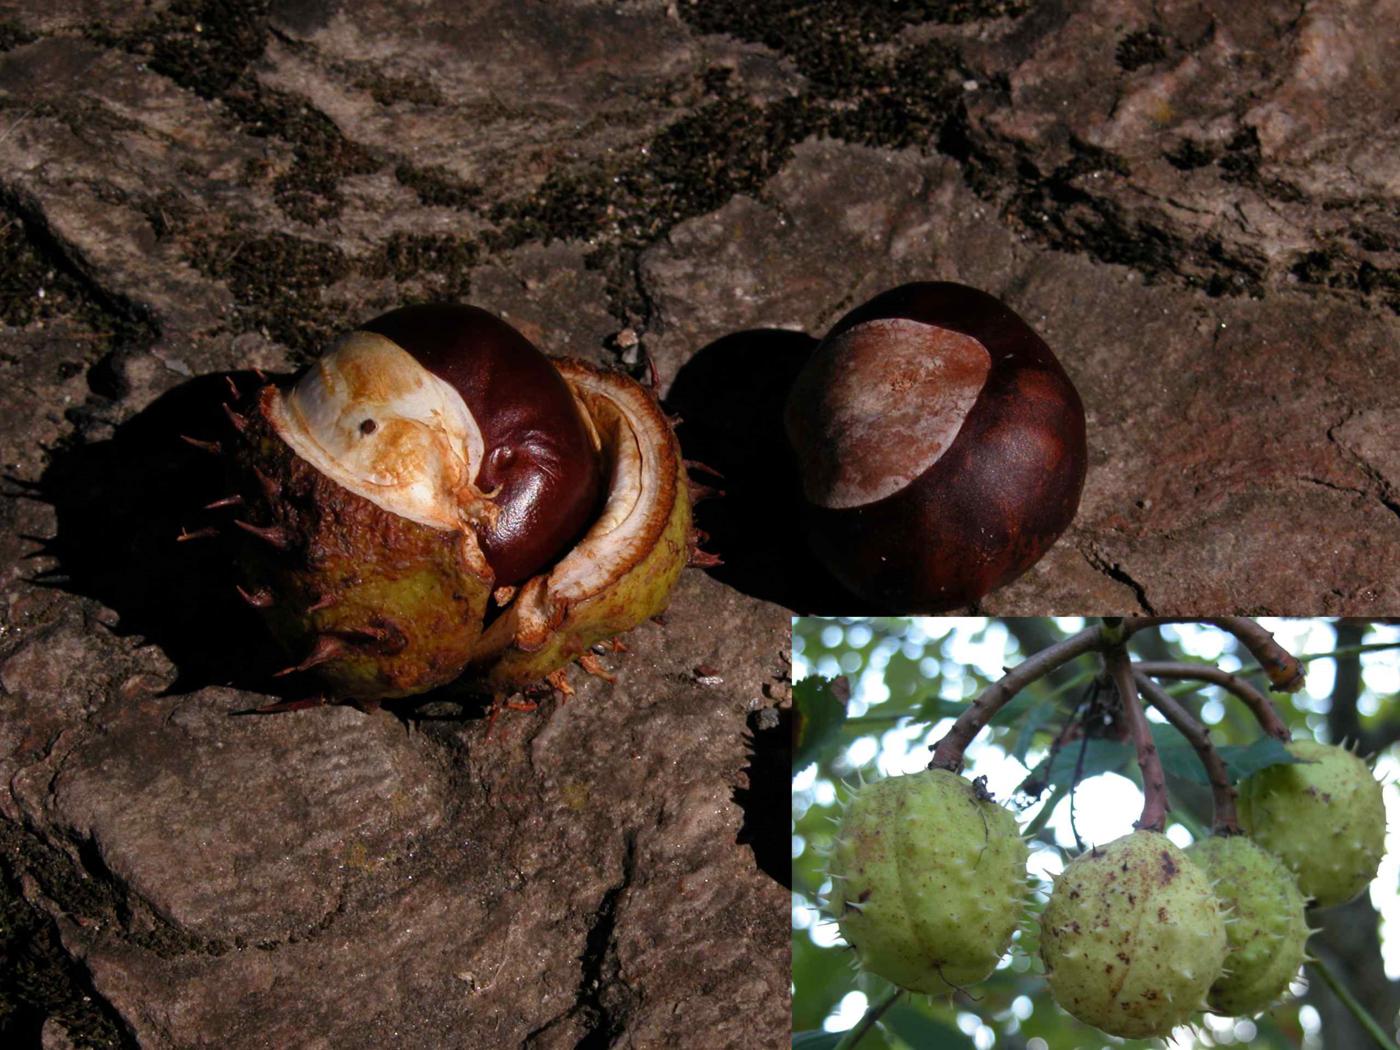 Horse-chestnut fruit